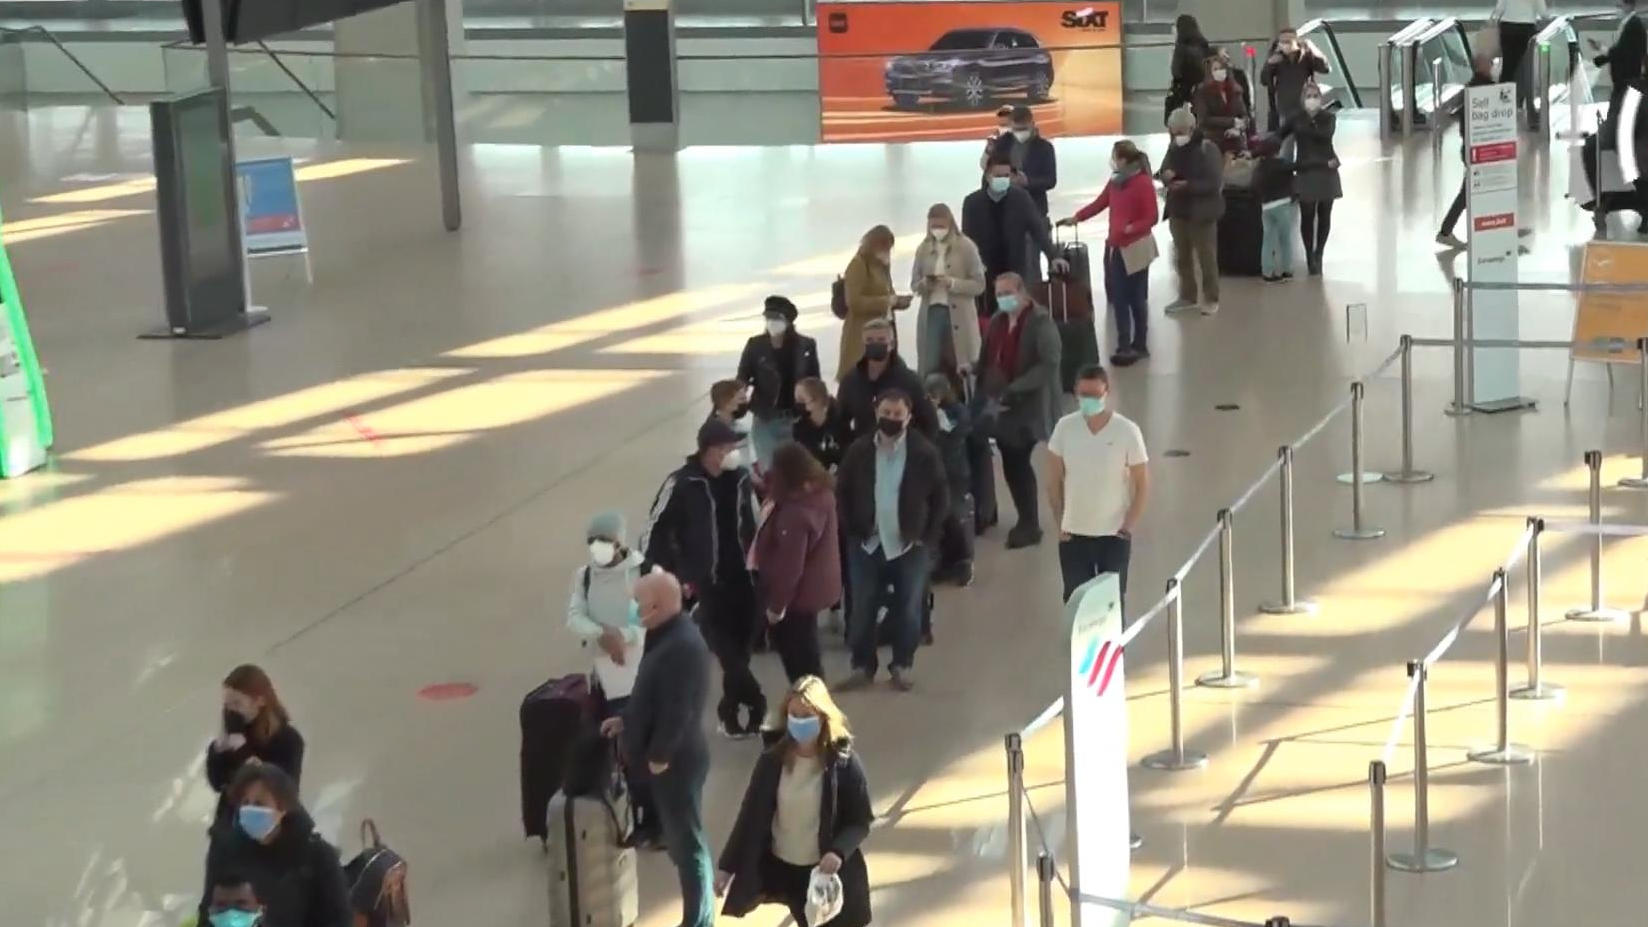 Osterferienbeginn: Tausende reisen nach Mallorca Lange Schlangen am Flughafen